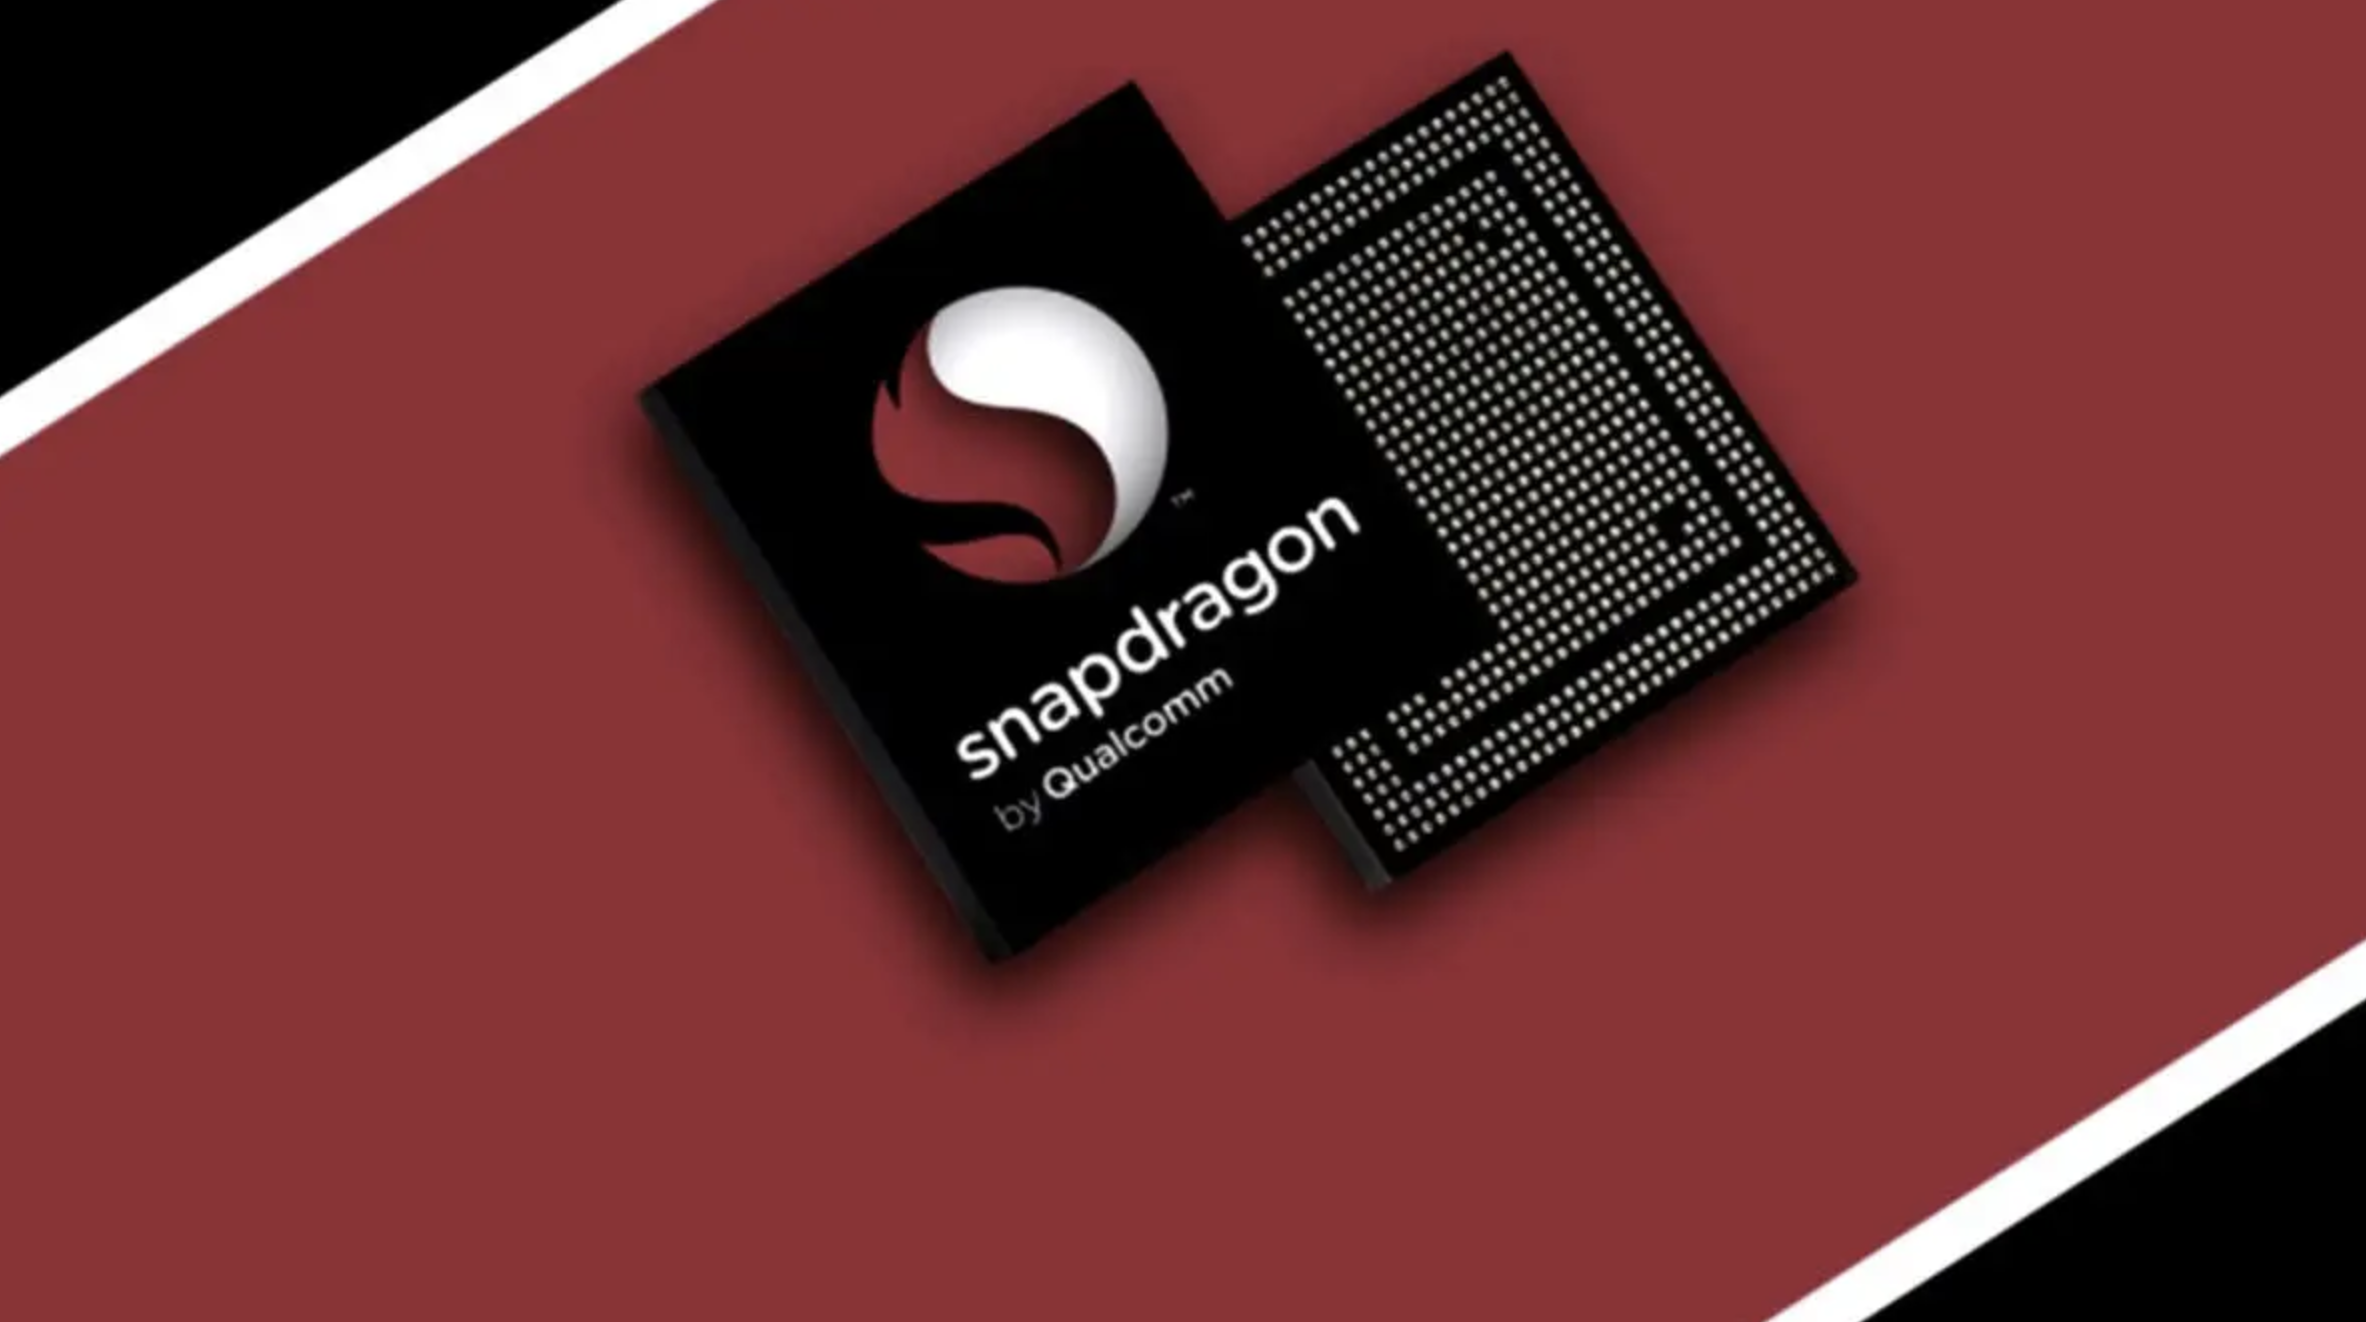 Chipset Snapdragon 6 Gen 1 Bikin Smartphone Menengah Naik Kelas